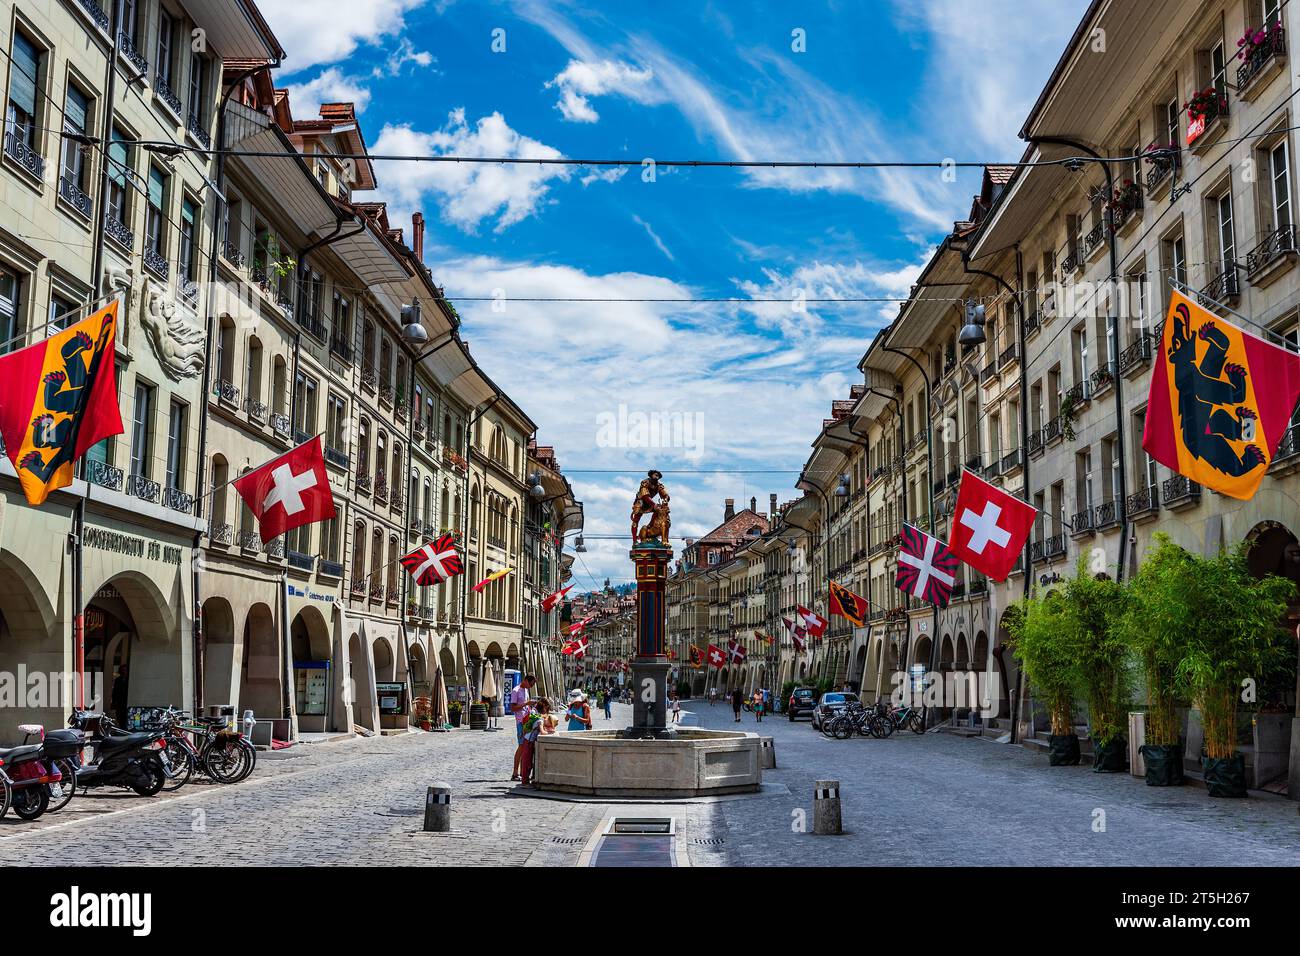 Enchanting Bern: Where History Meets Scenic Beauty Stock Photo